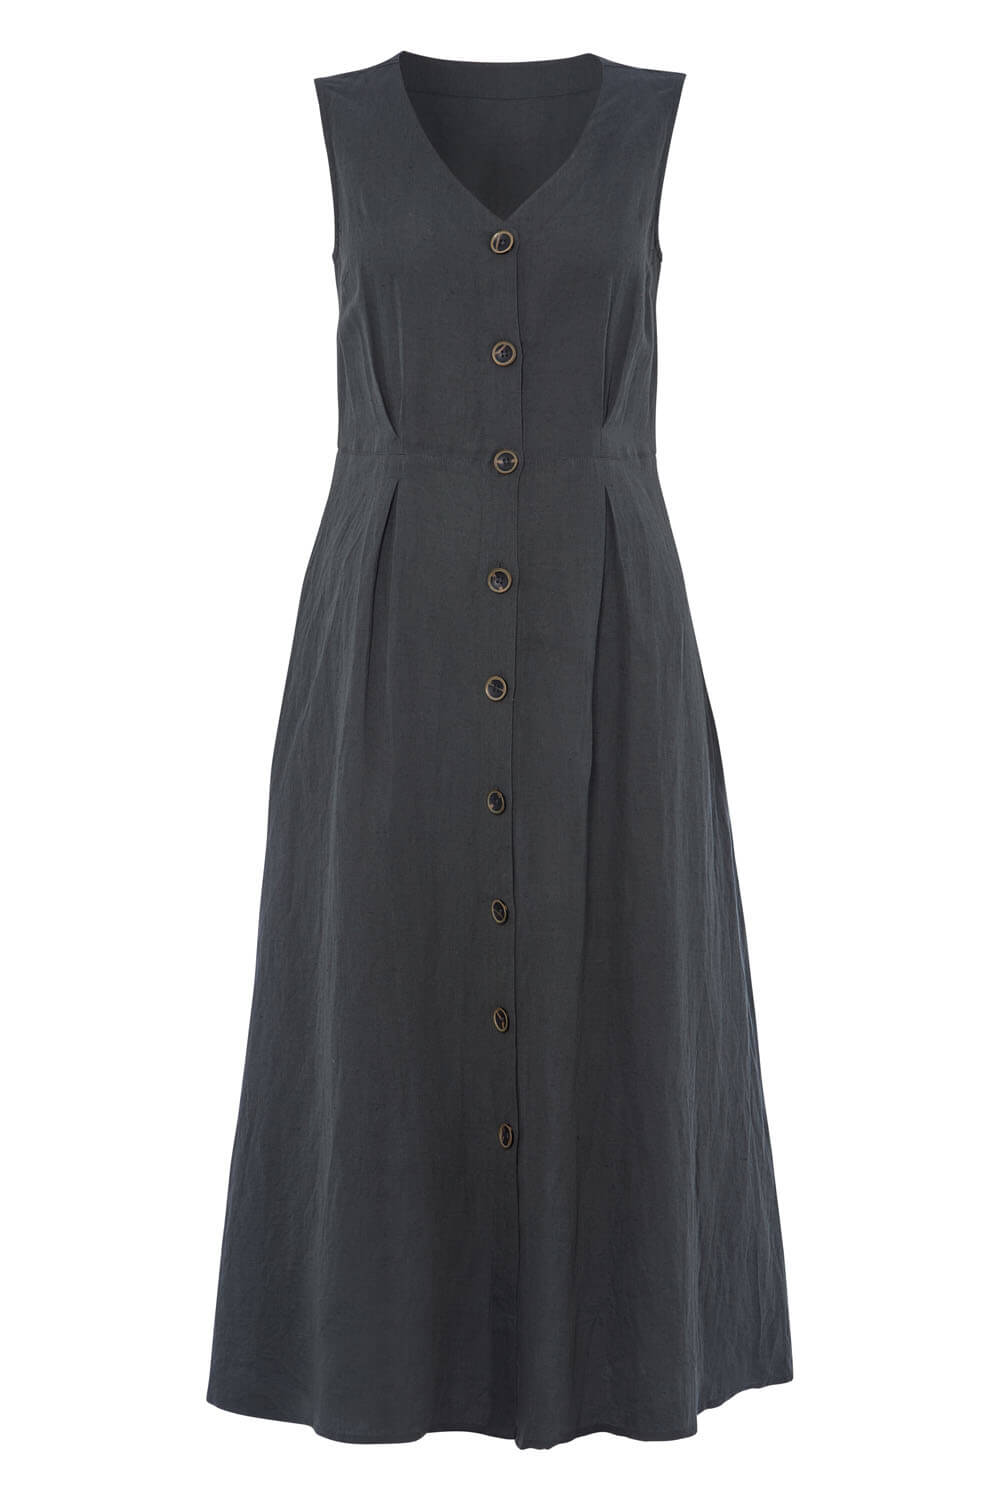 KHAKI Button Through Linen Midi Dress, Image 5 of 5